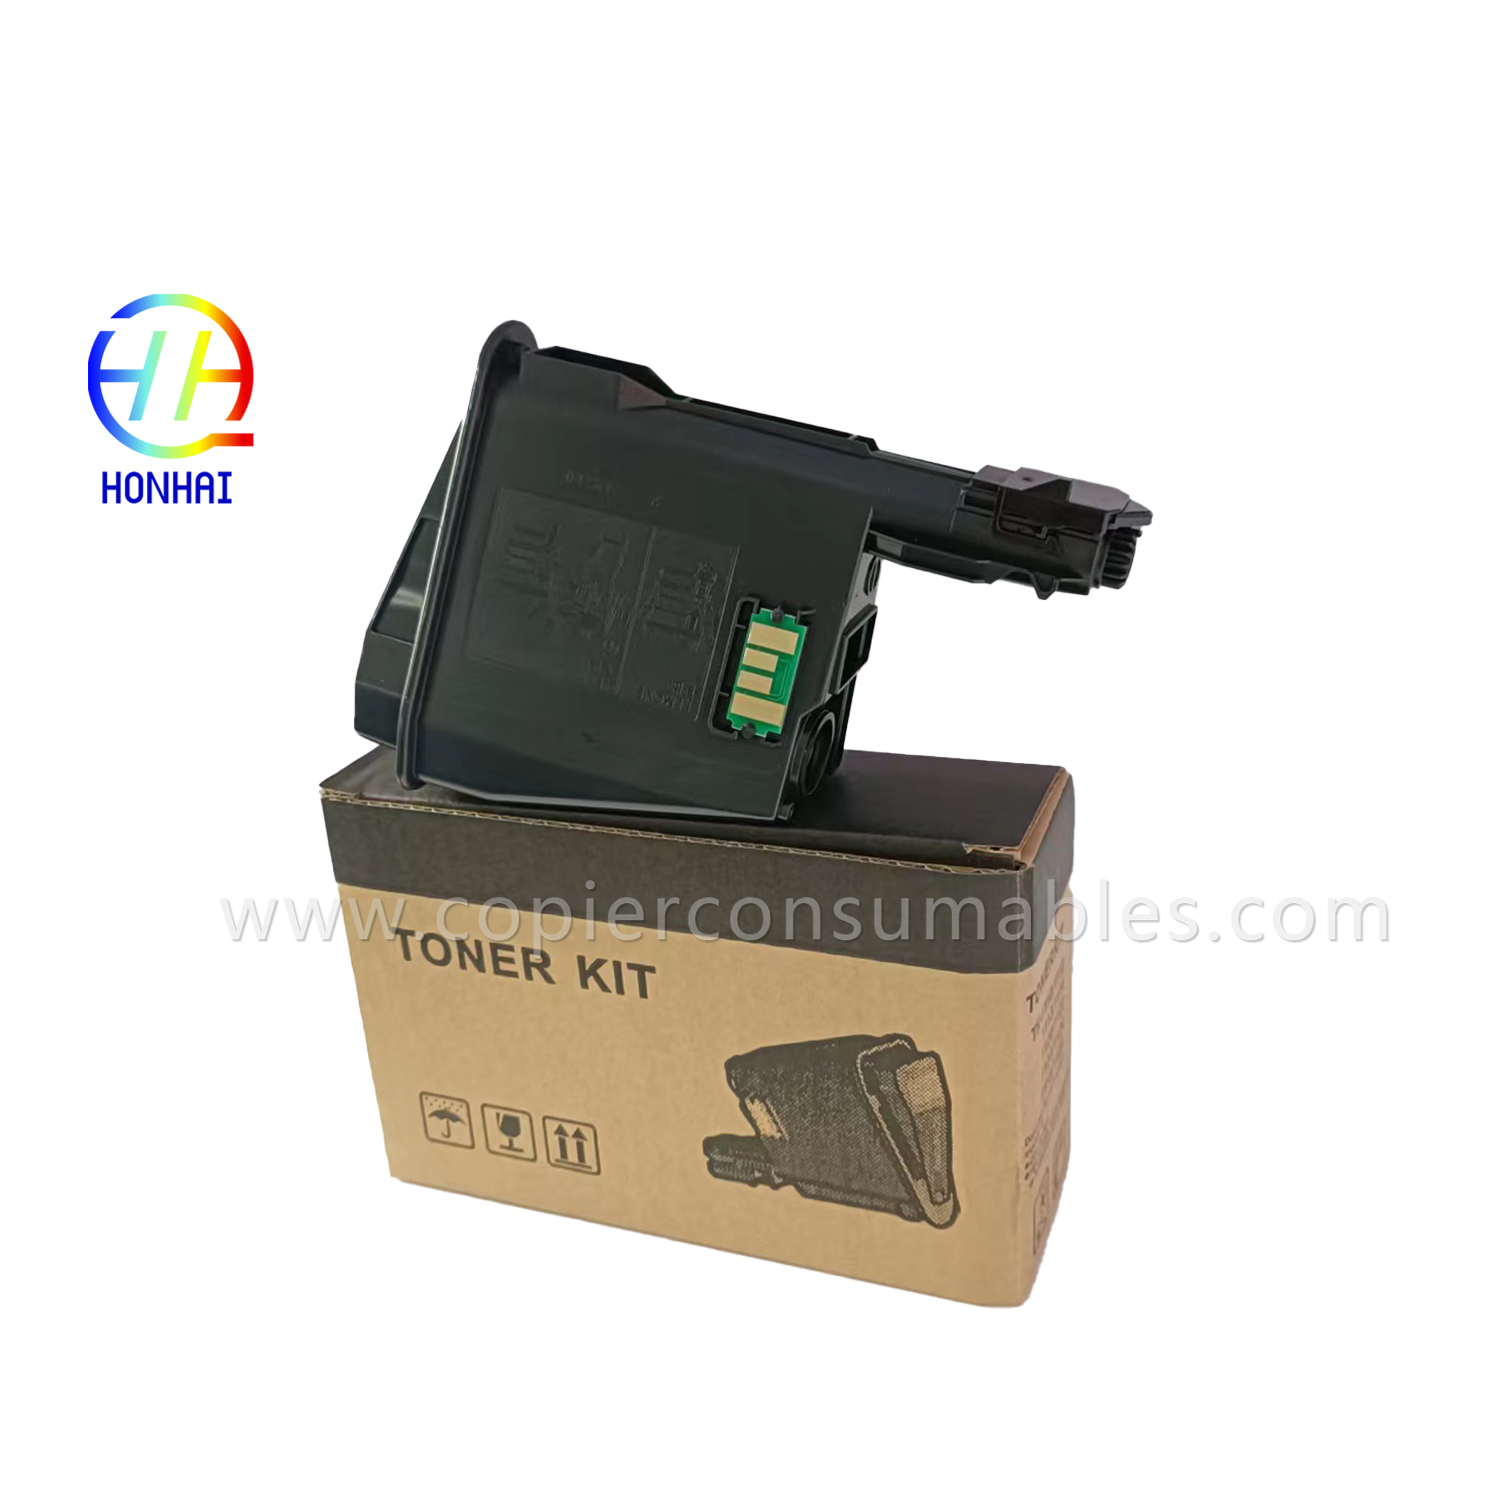 I-Toner cartridge ye-Kyocera ECOSYS FS-1040 1060DN 1020MFP 1041 1120MFP 1025MFP 1061DN